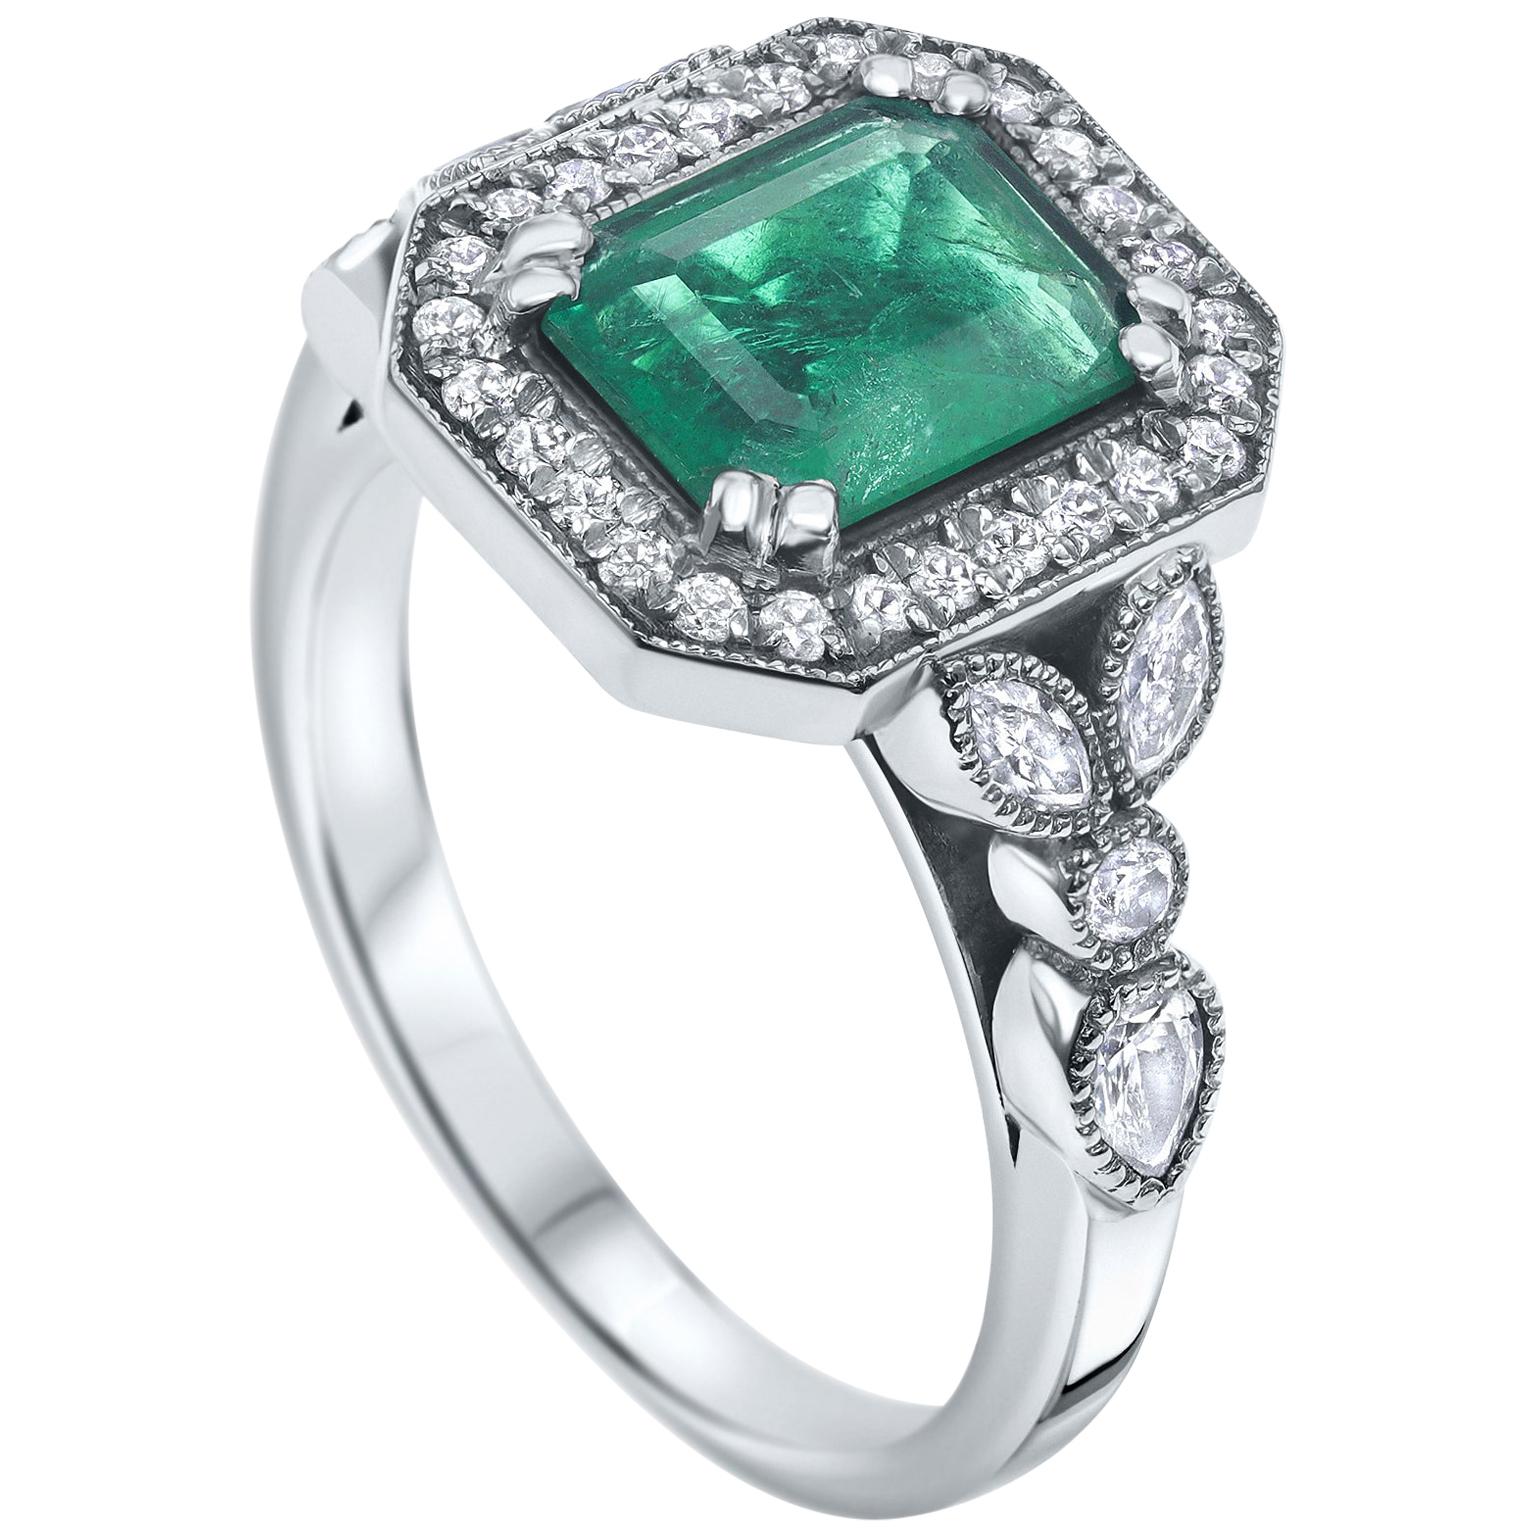 2.53 Carat Emerald & Diamond Ring in 14 Karat White Gold - Shlomit Rogel